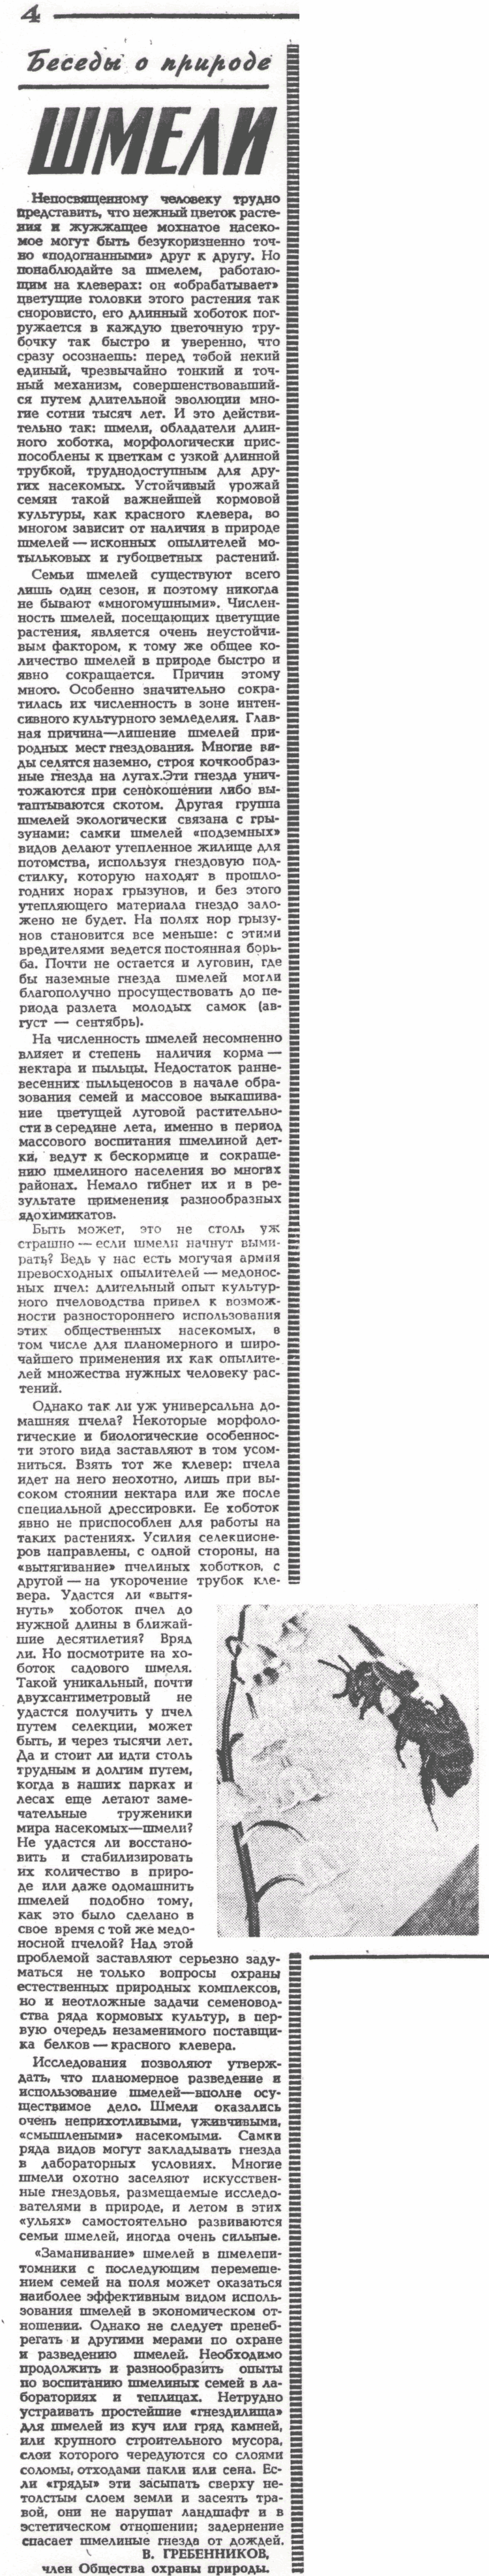 Шмели. В.С. Гребенников. Сельская жизнь, 04.06.1972, с.4. Фотокопия